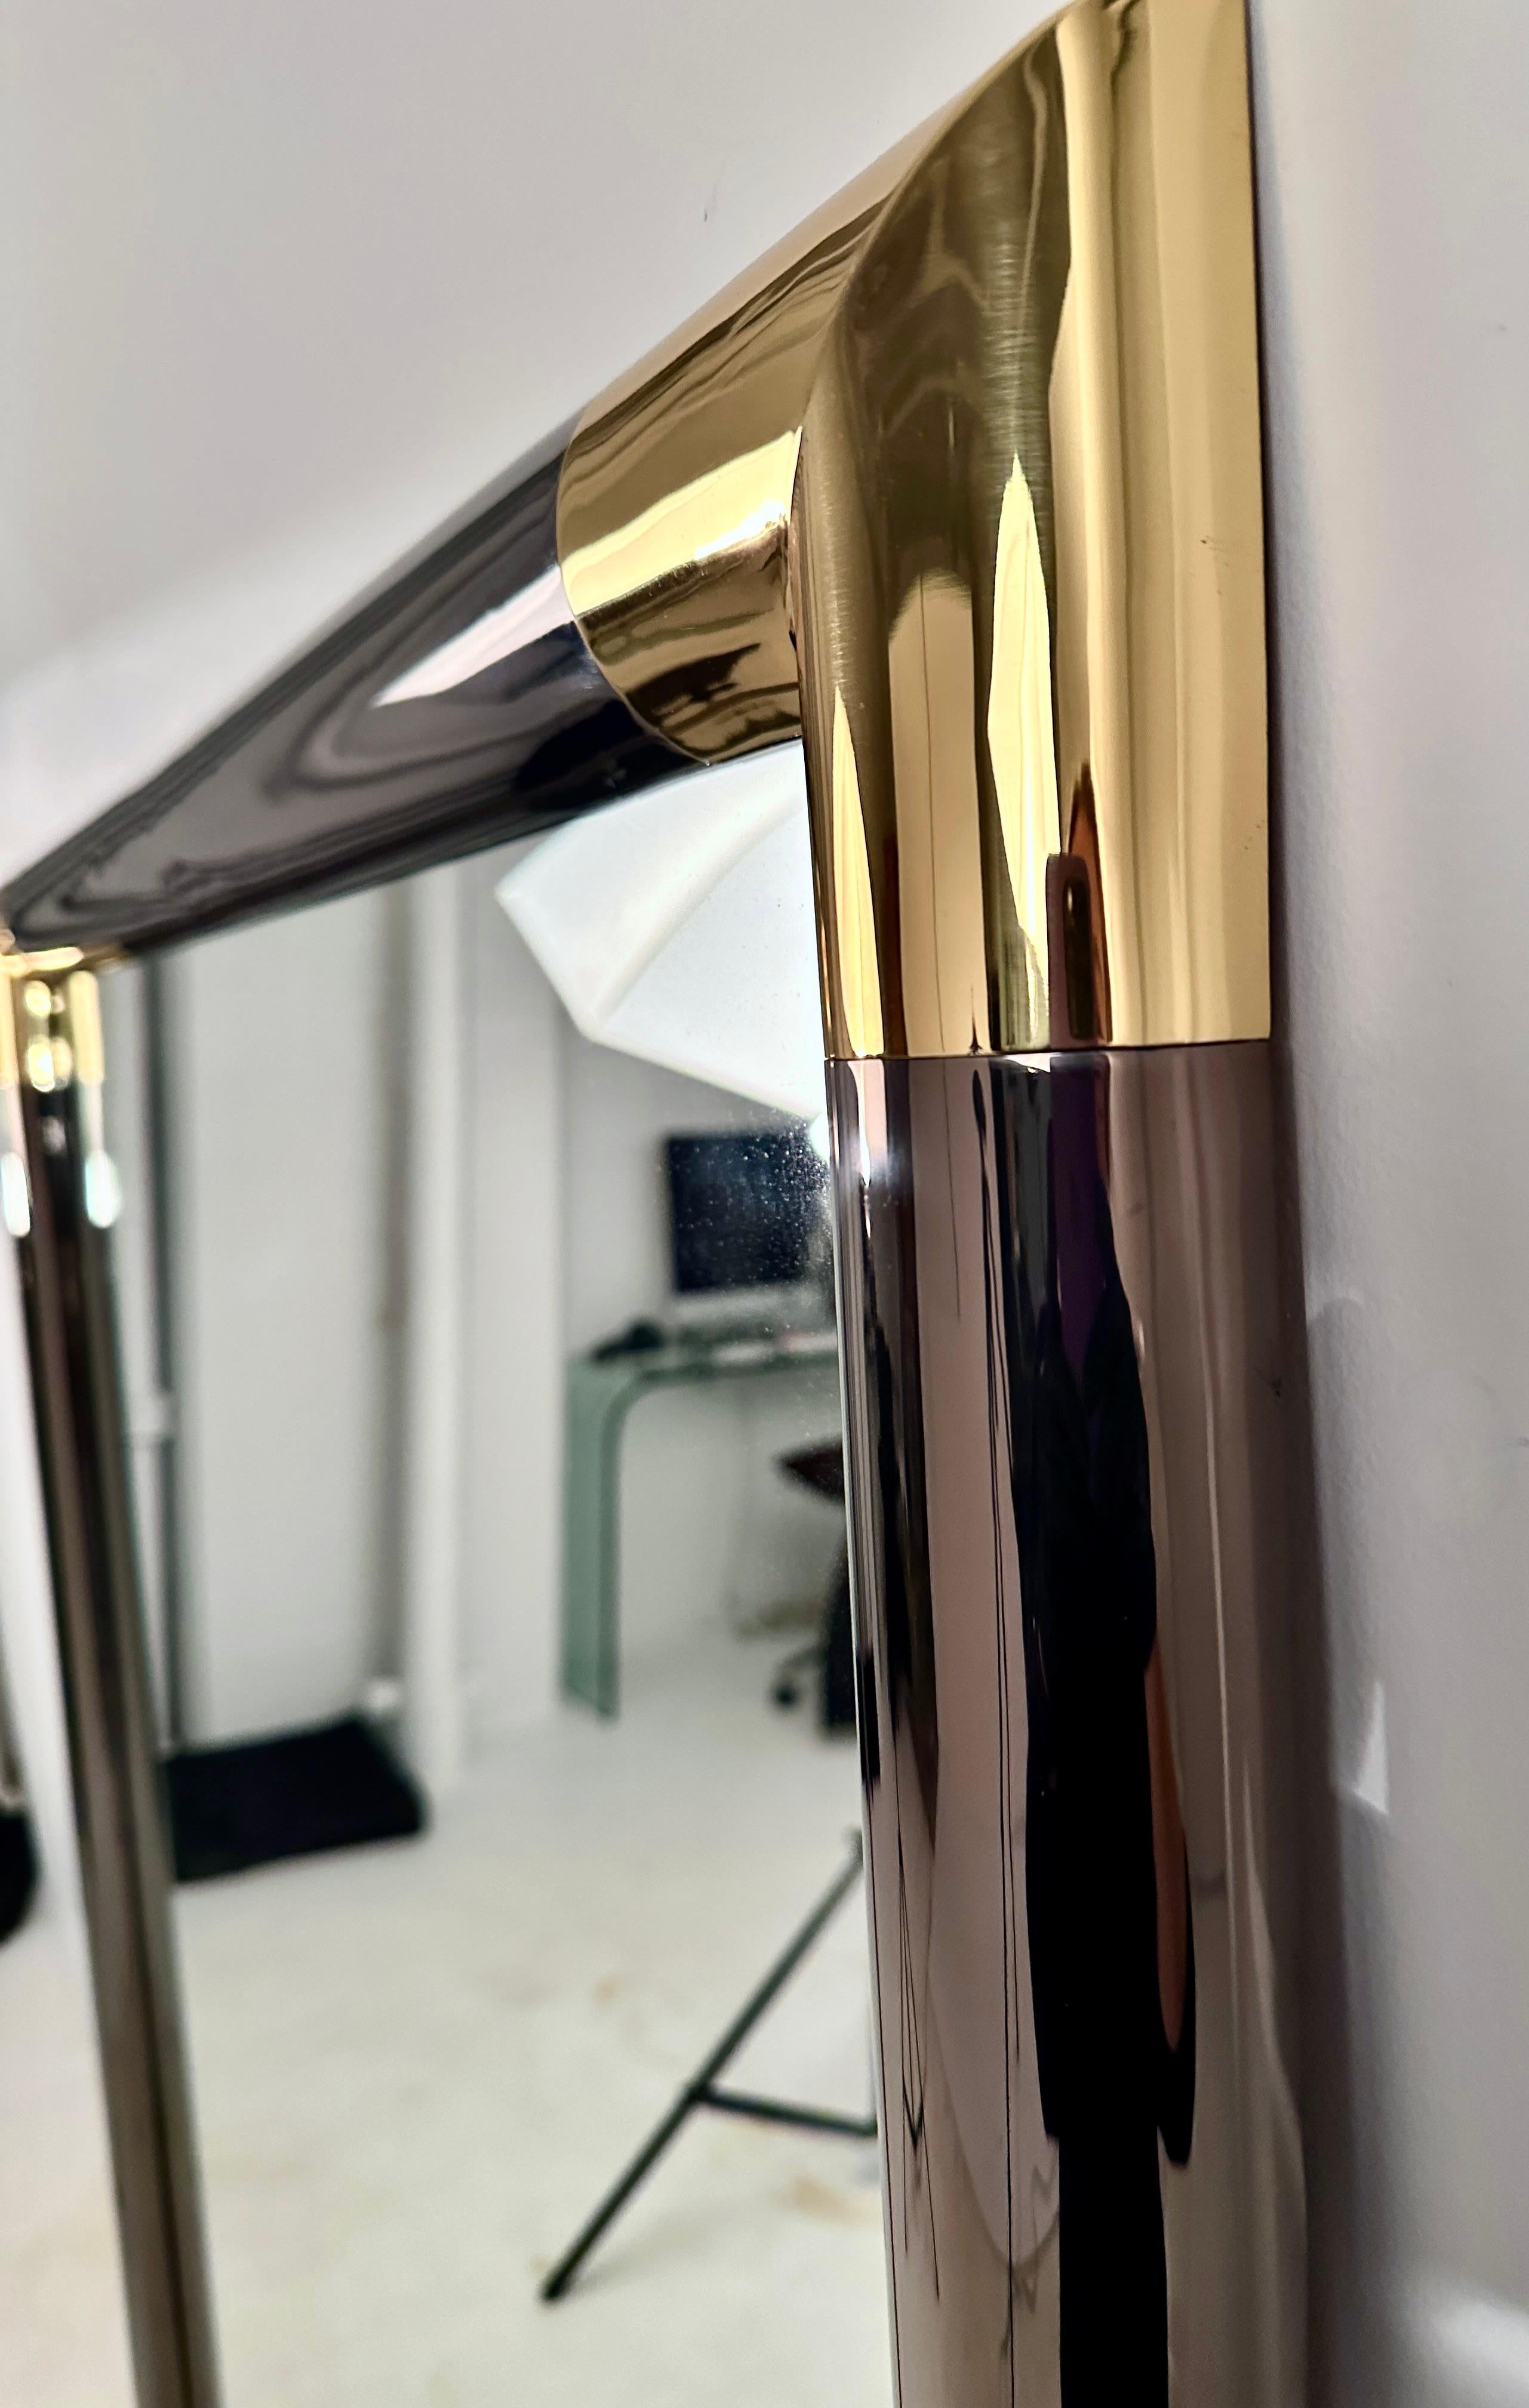 Dieser große Spiegel zeigt den vielleicht ikonischsten Stil von Karl Springer: Rotguss mit goldfarbenen Messingdetails. Sicherlich seine luxuriöseste Kombination. Dieser Vintage-Spiegel wurde von den Kunsthandwerkern, die ihn ursprünglich